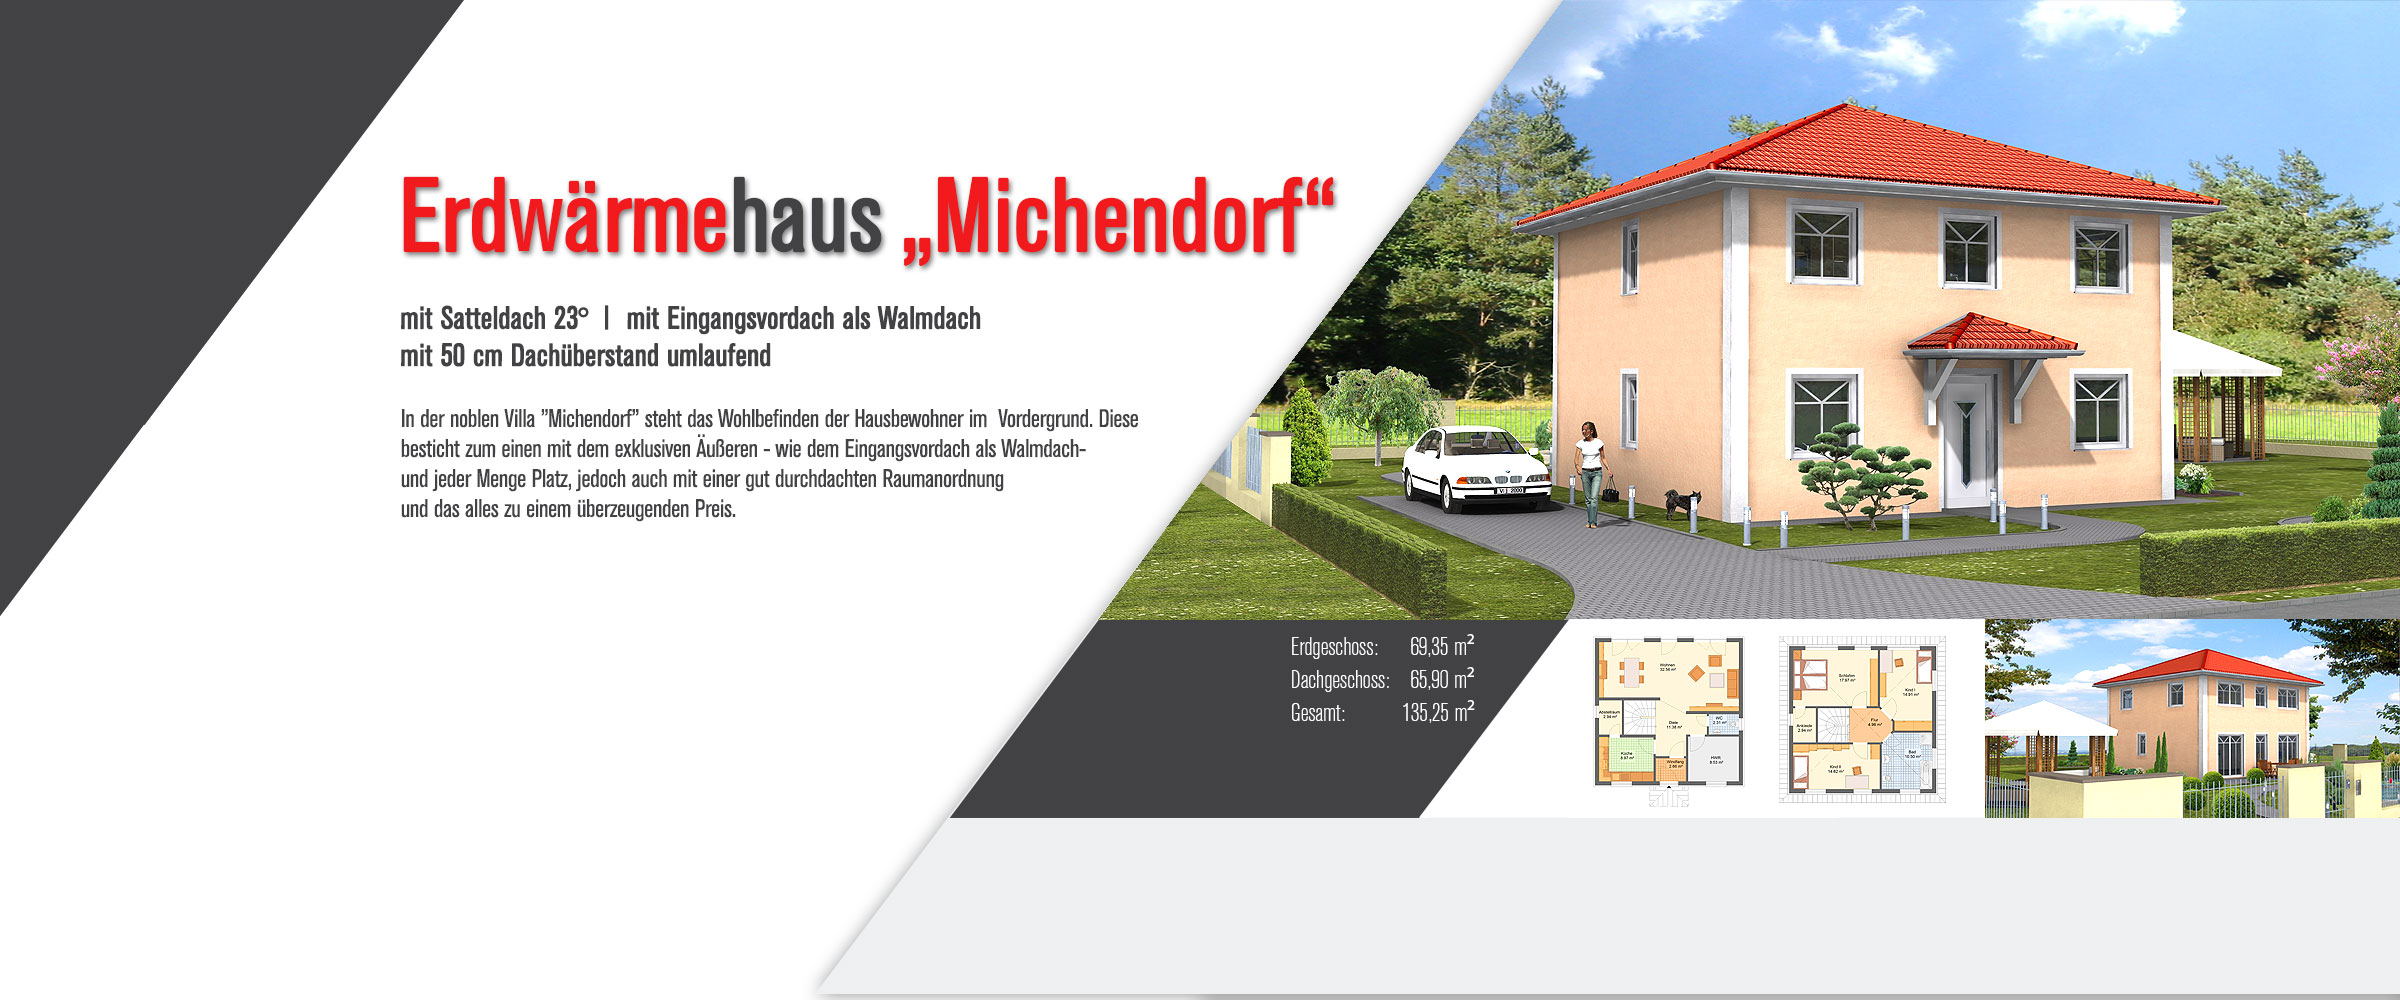 Erdwärmehaus Michendorf